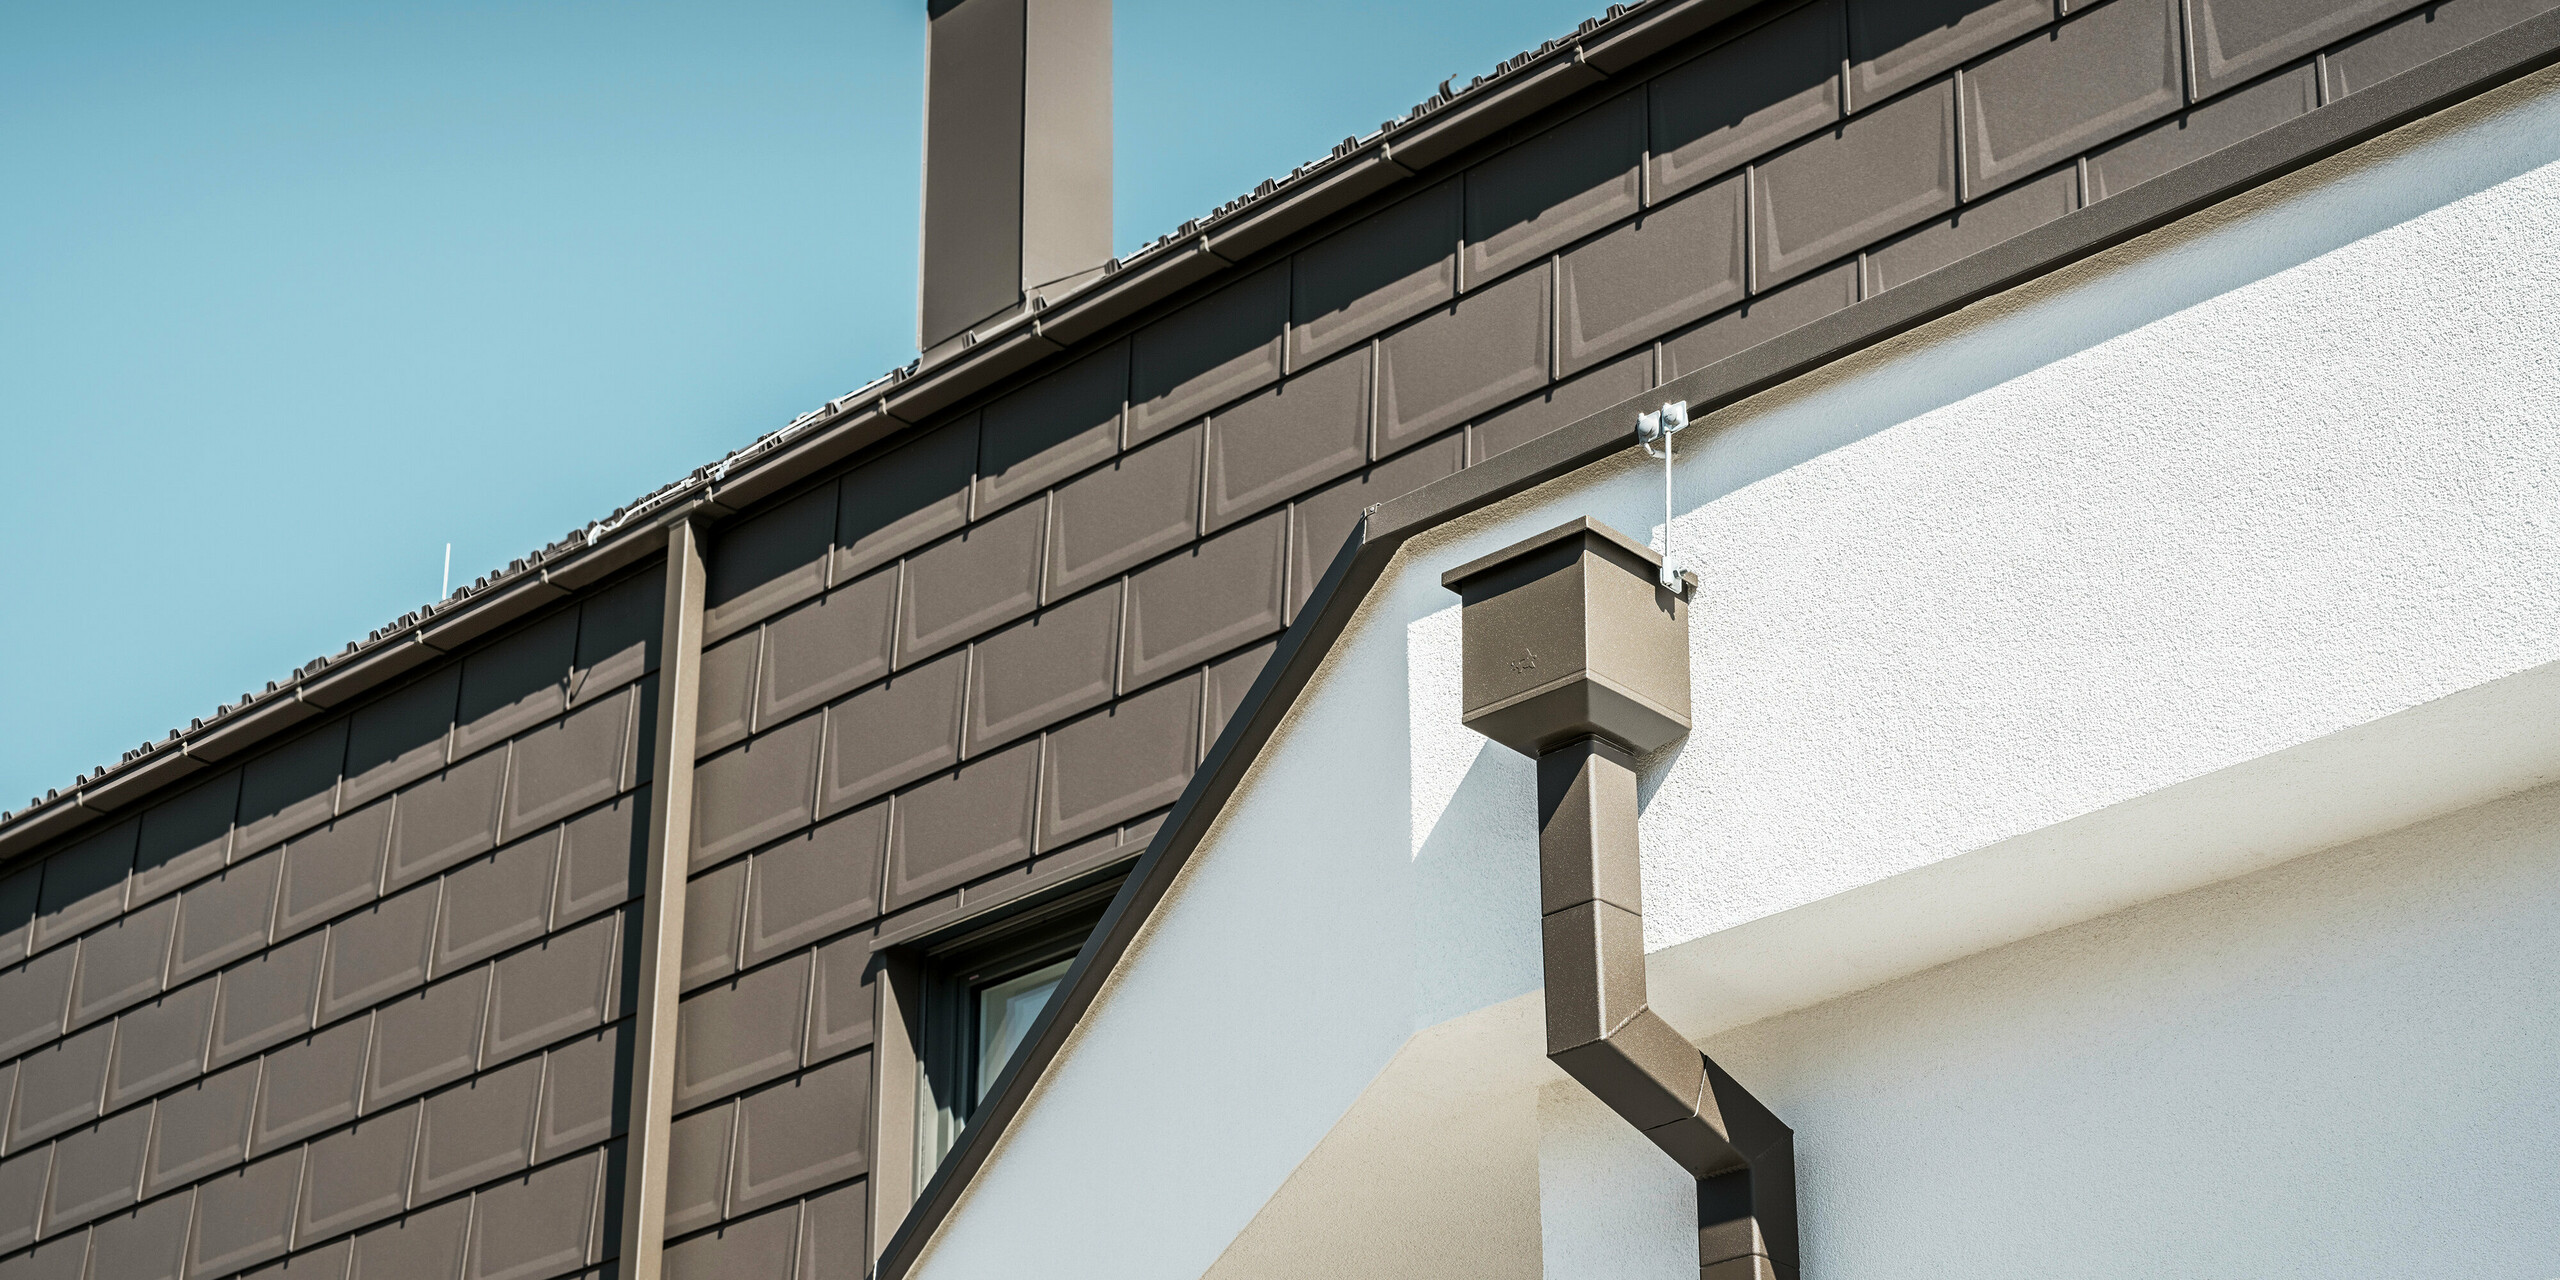 Detailaufnahme der Dachkante bzw. der Fassade eines Einfamilienhauses in Neukirchen, Österreich, das mit PREFA Dachplatten R.16 in P.10 Braun ausgestattet ist. Sowohl die Dachplatten, die bei diesem Gebäude als Dach- und Fassadenverkleidung fungieren, als auch das Dachentwässerungssystem, bestehend aus dem Quadratrohr, dem Wasserfangkasten und der Kastenrinne, sind in der gleichen Farbgebung gehalten und bieten ein konsistentes, hochwertiges Finish. Die Verwendung von PREFA Produkten verleiht der Immobilie ein modernes Erscheinungsbild, während die ästhetische Integration der Entwässerungskomponenten die funktionale Eleganz des Designs unterstreicht.